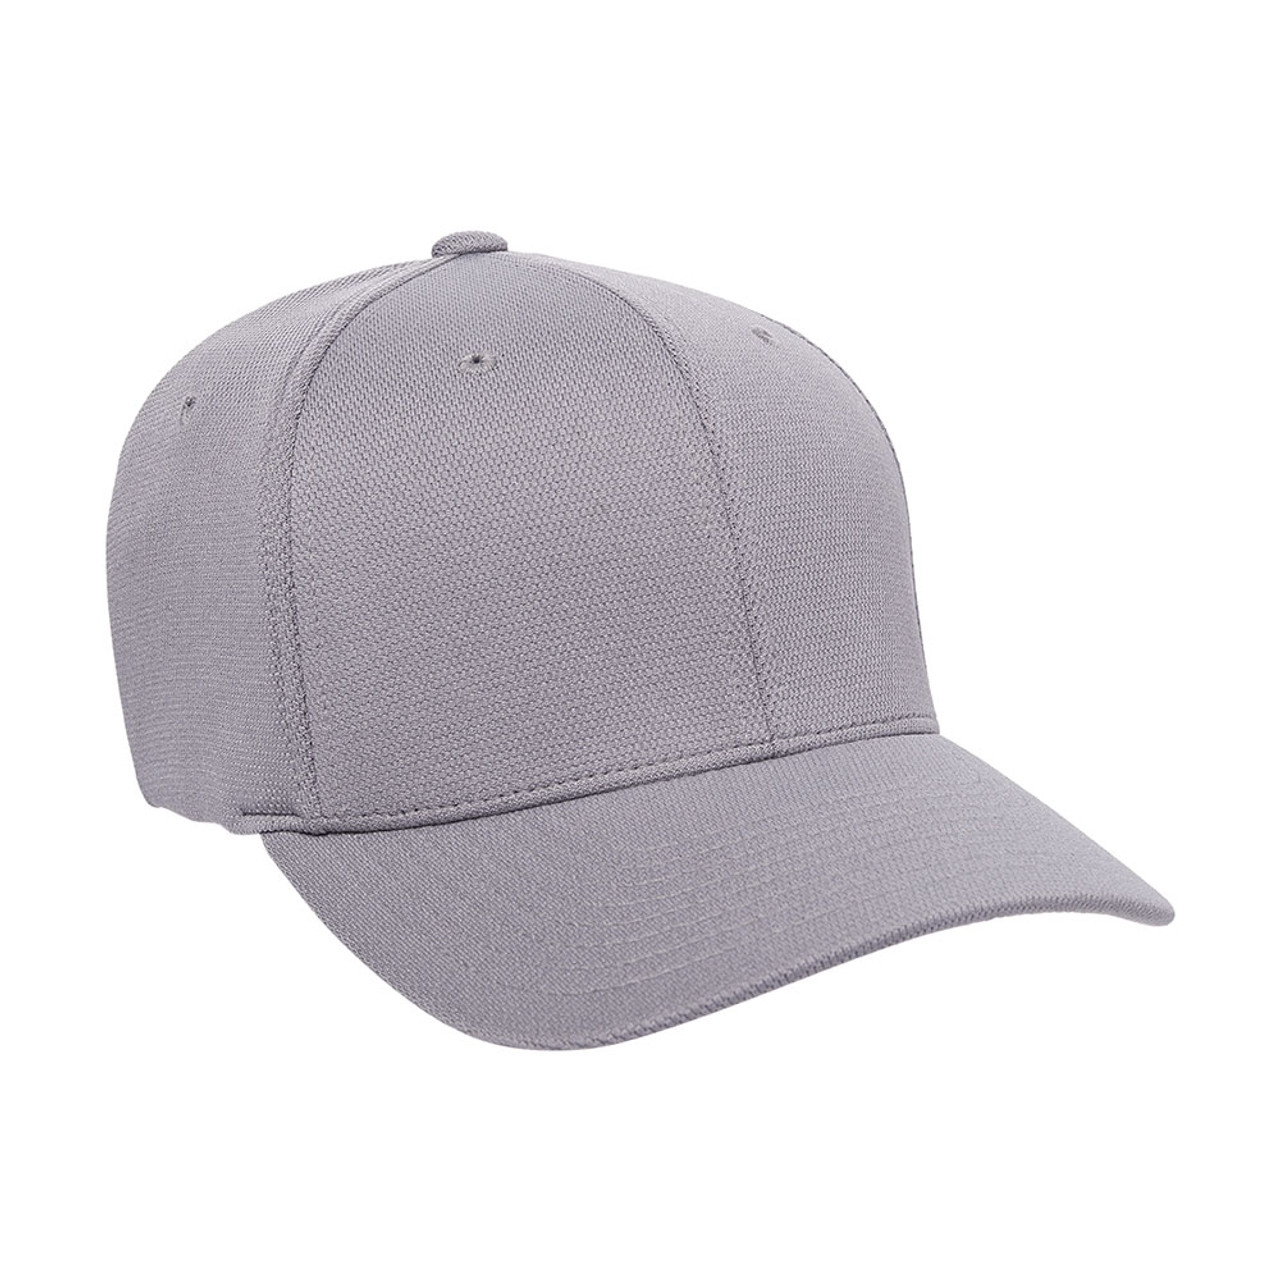 Dozen - Hat Cool Dry Performance Cap | Flexfit The & One Jac